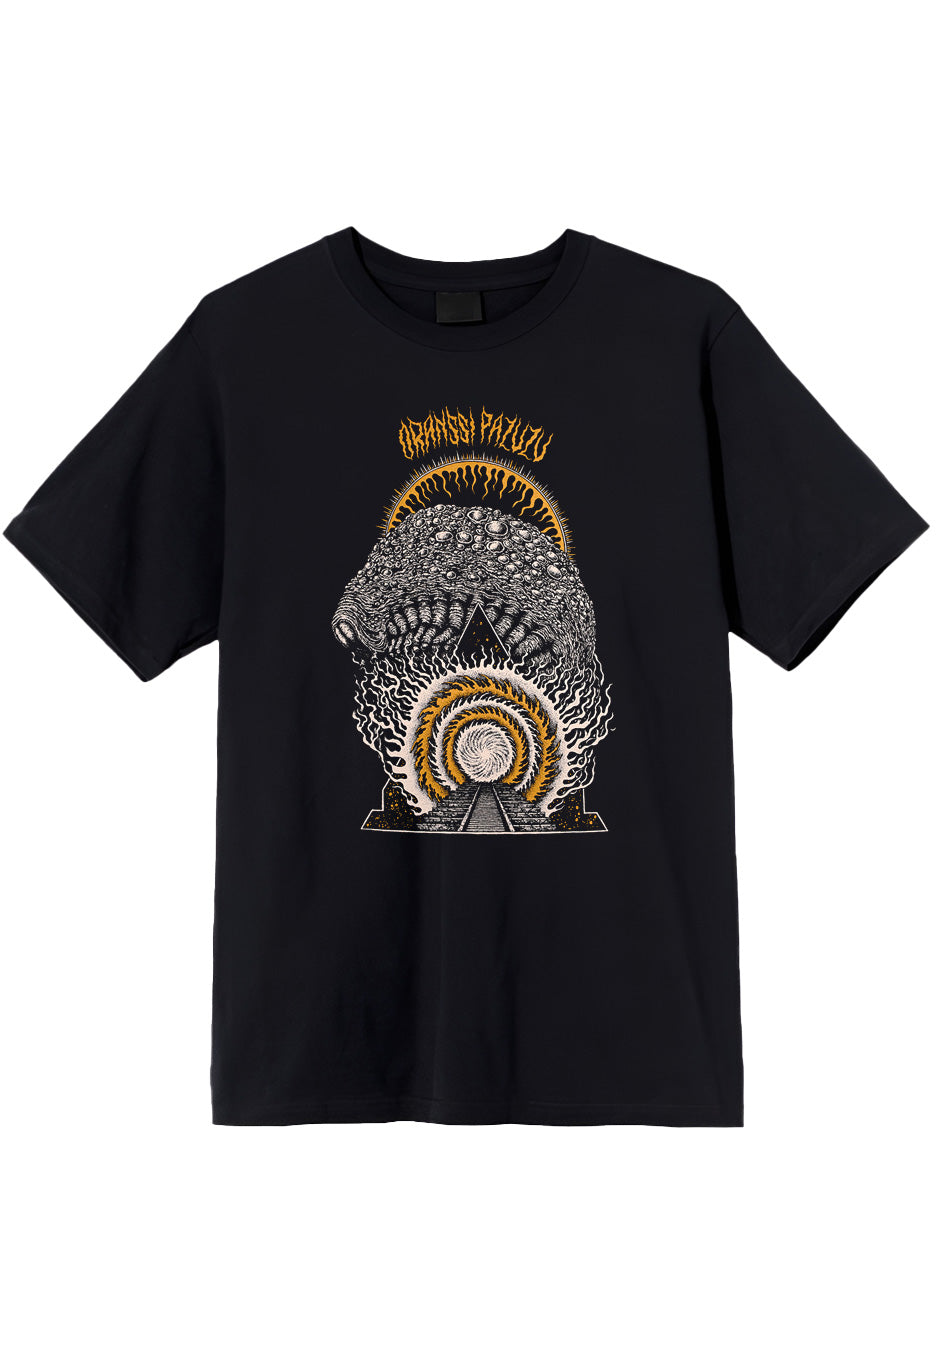 Oranssi Pazuzu - Portal - T-Shirt